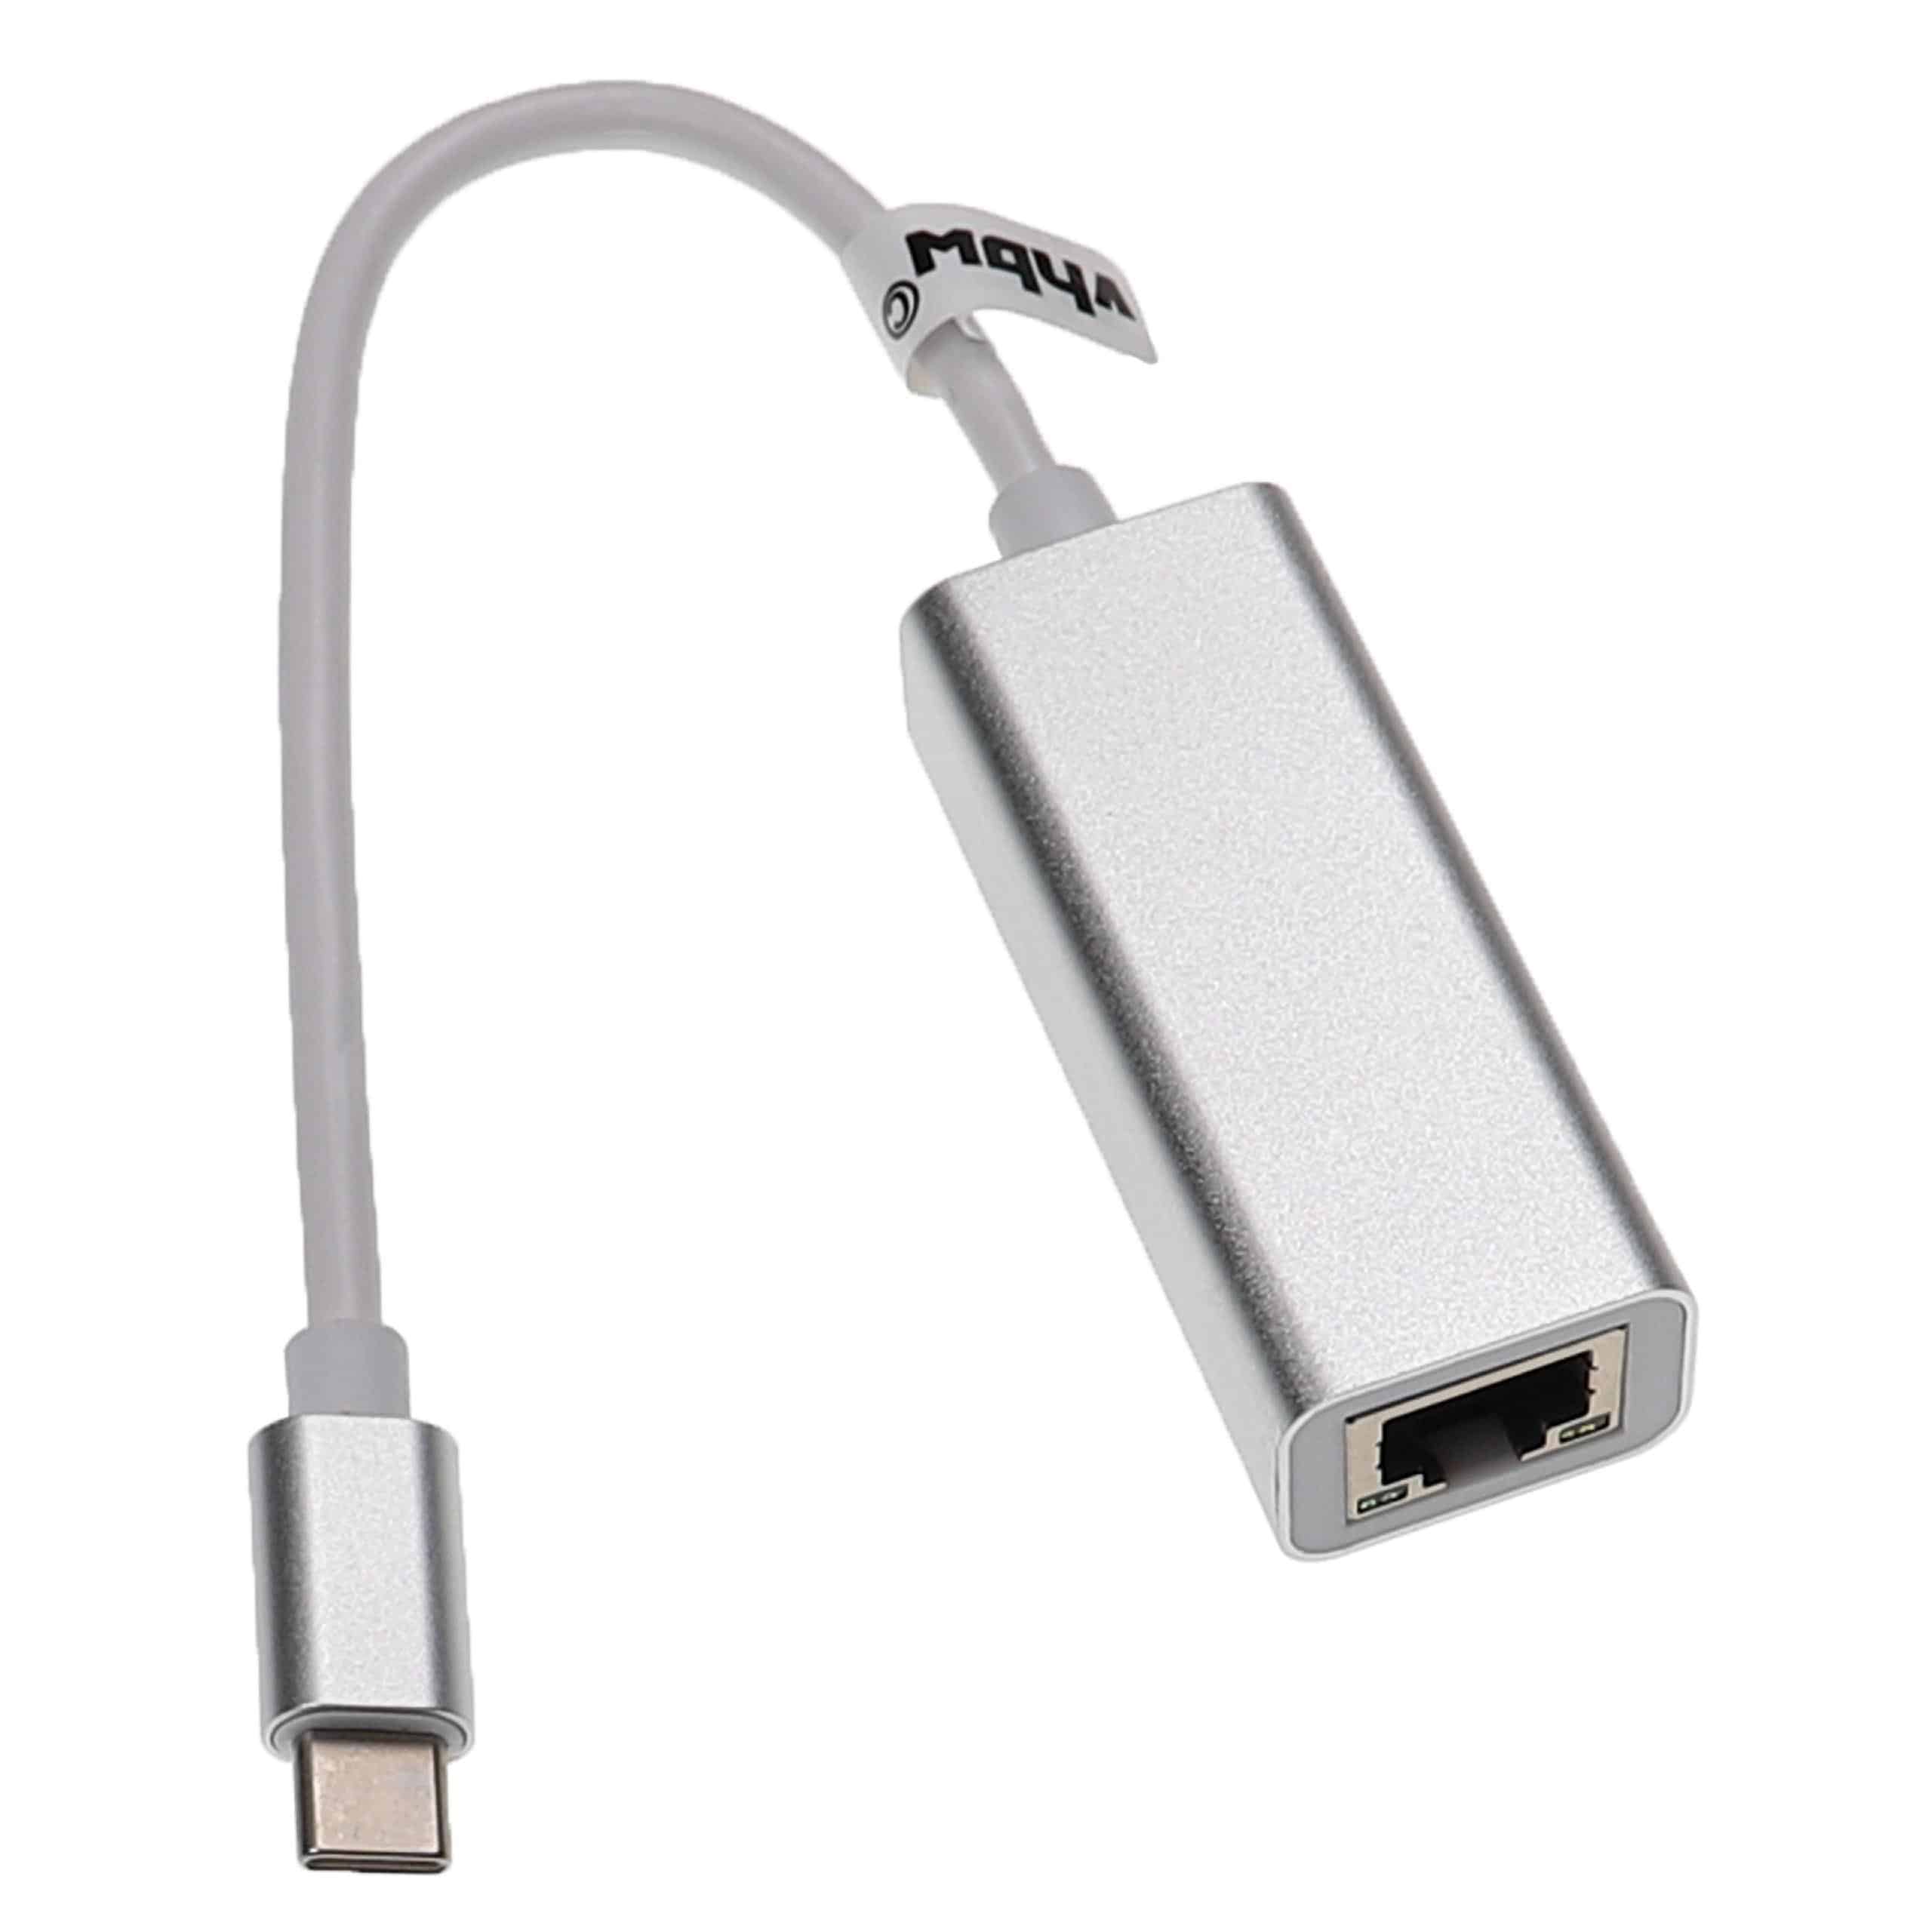 Adattatore Ethernet da USB-C (m) a RJ45 (f) per laptop, notebook, PC